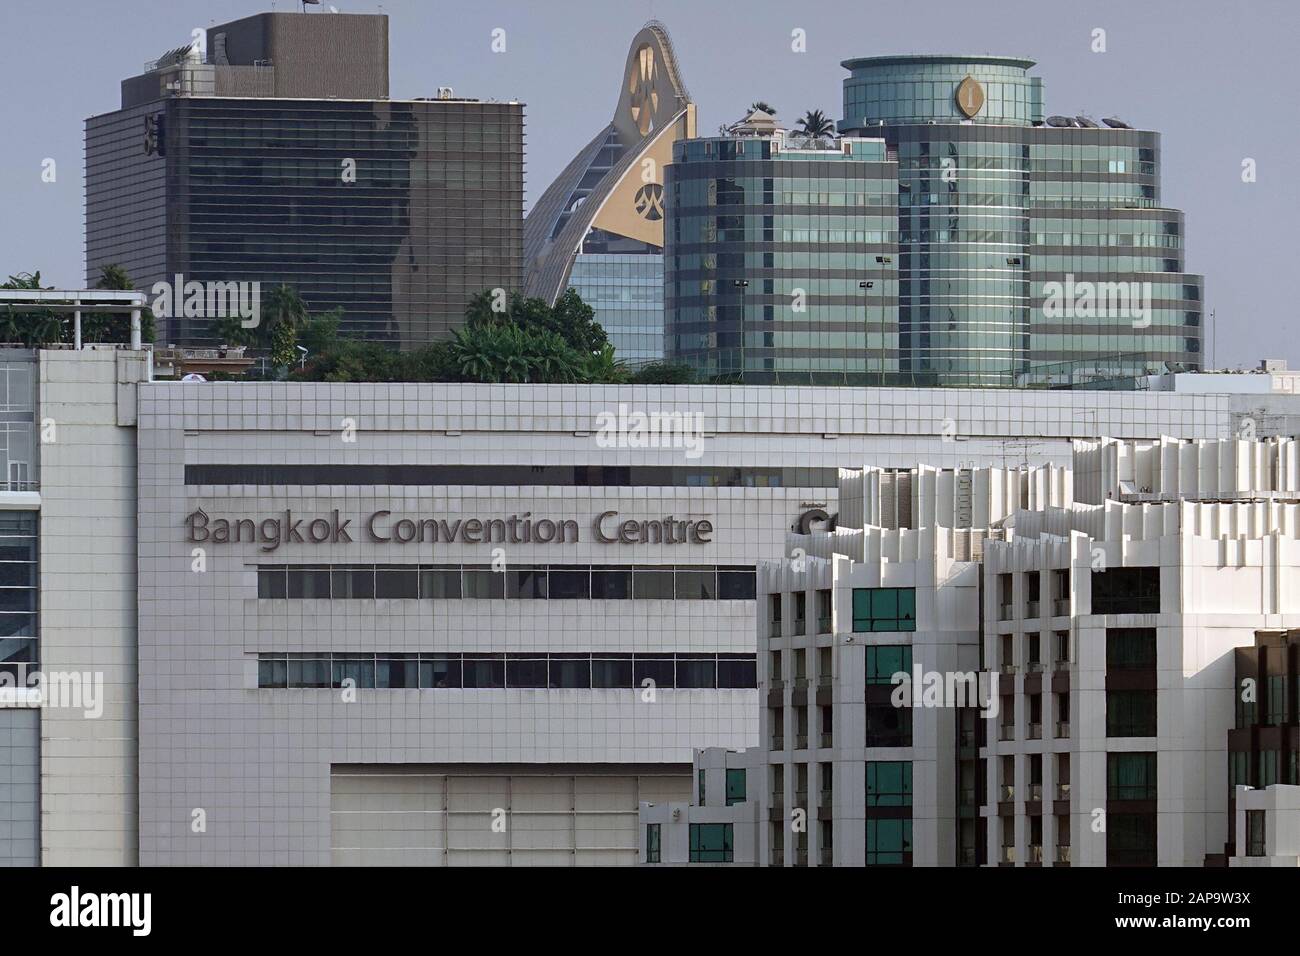 Bangkok, Thailand - December 27, 2019: Bangkok Convention Centre Stock Photo